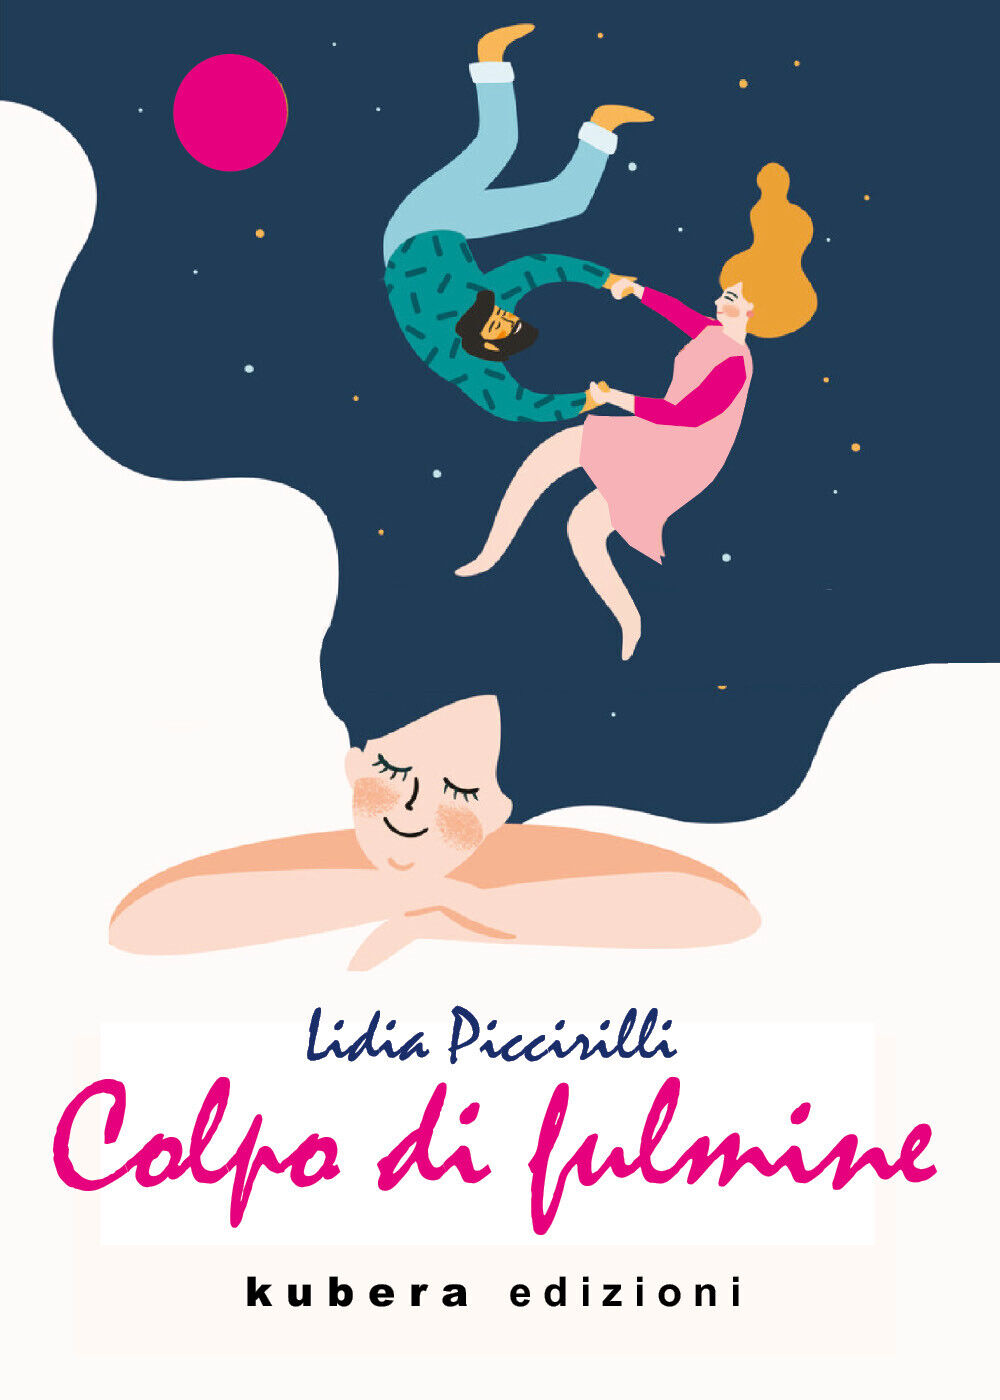 Colpo di fulmine di Lidia Piccirilli,  2021,  Kubera Edizioni